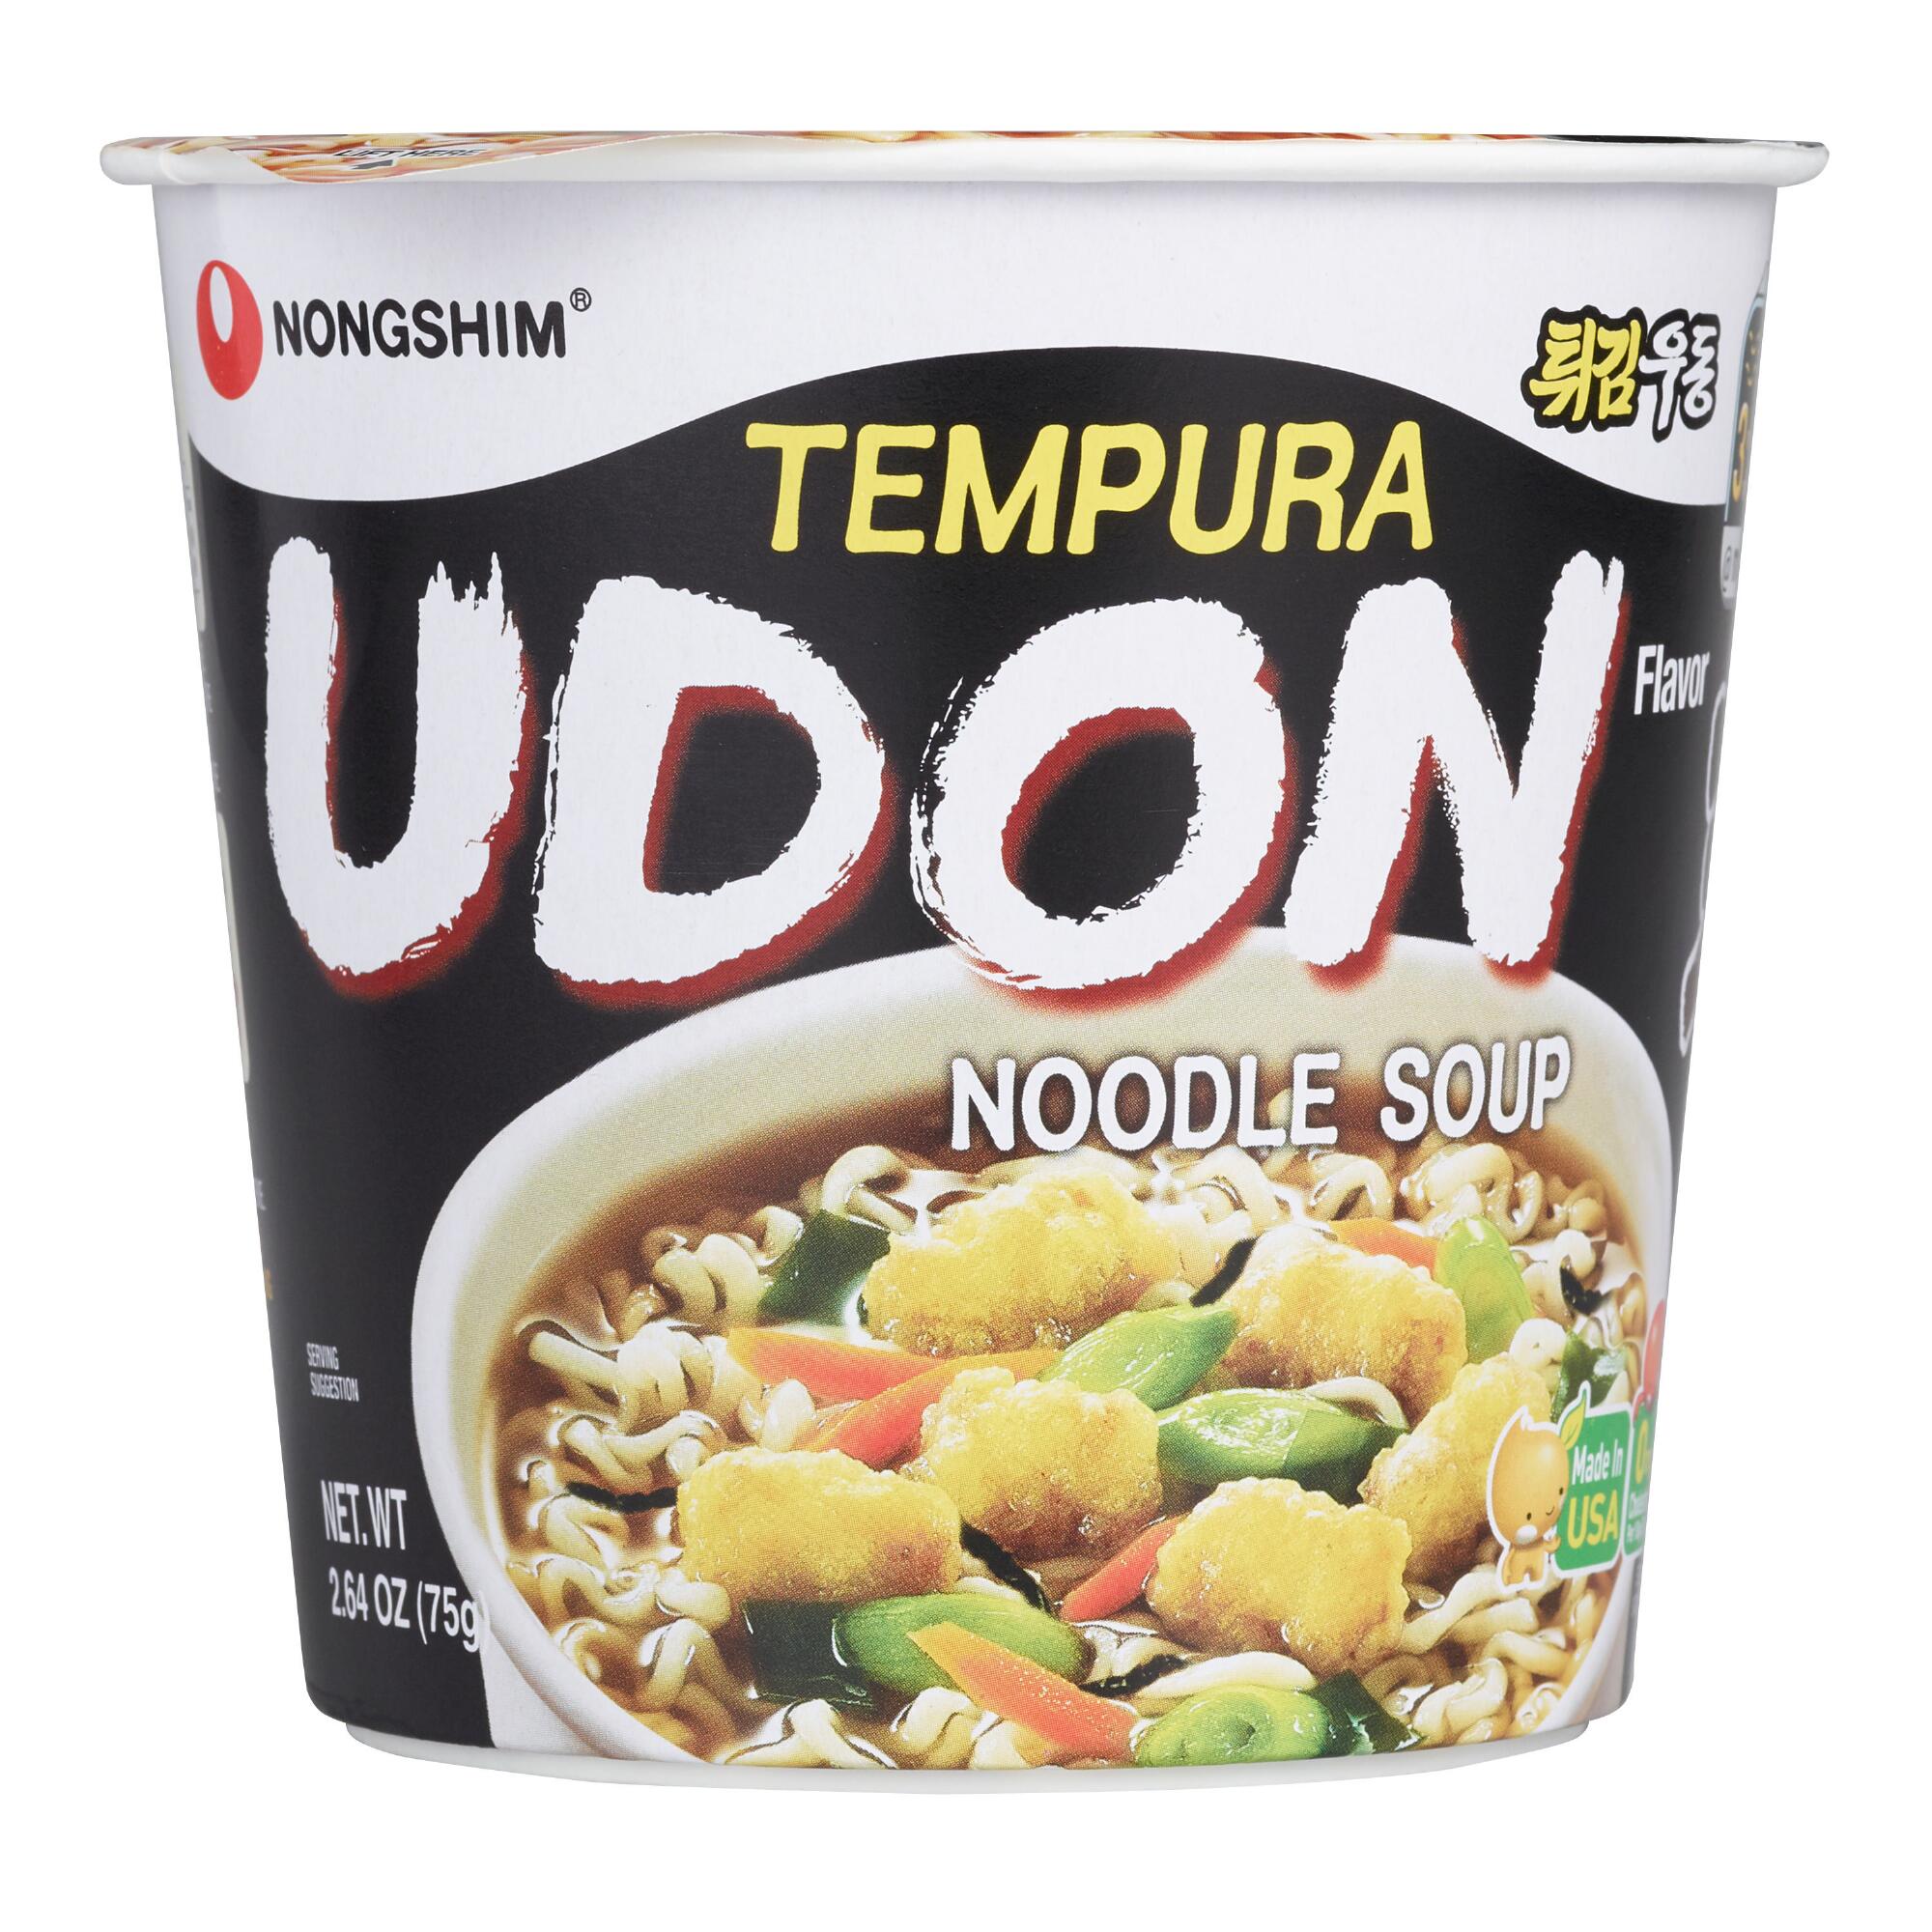 Nongshim Tempura Udon Noodle Soup Cups Set of 6 by World Market